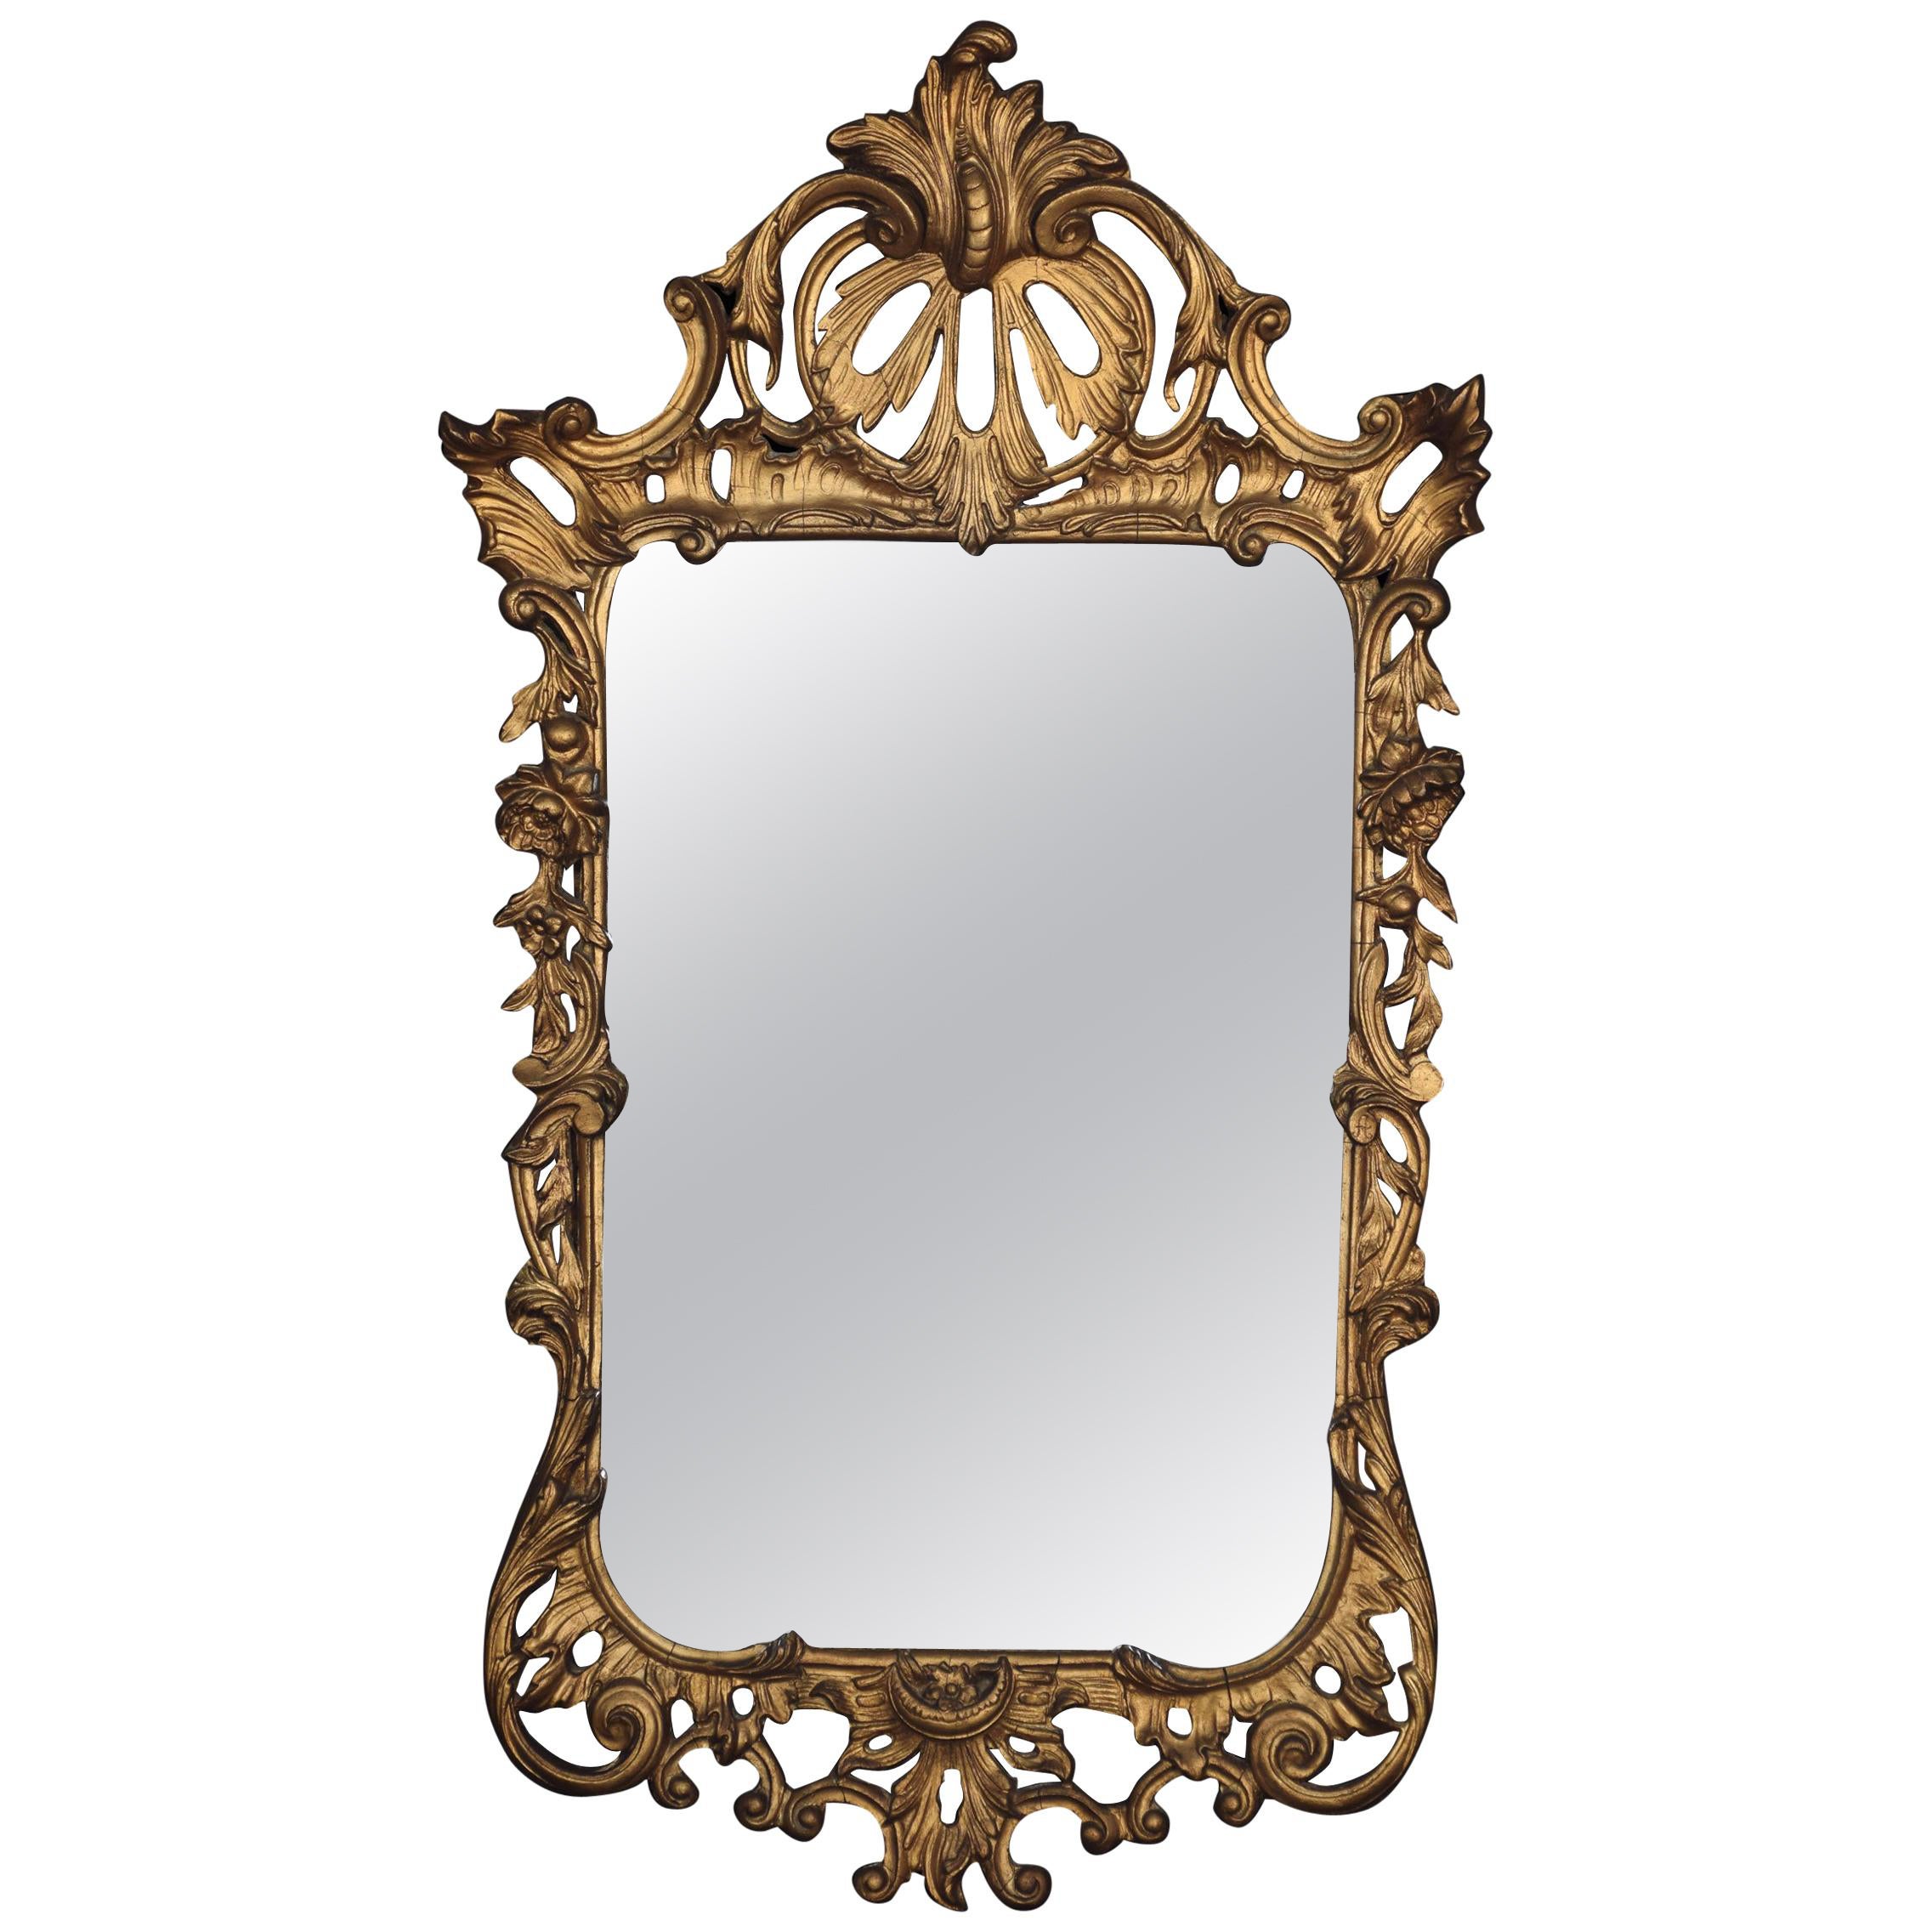 Rococo Revival Gilt Mirror For Sale